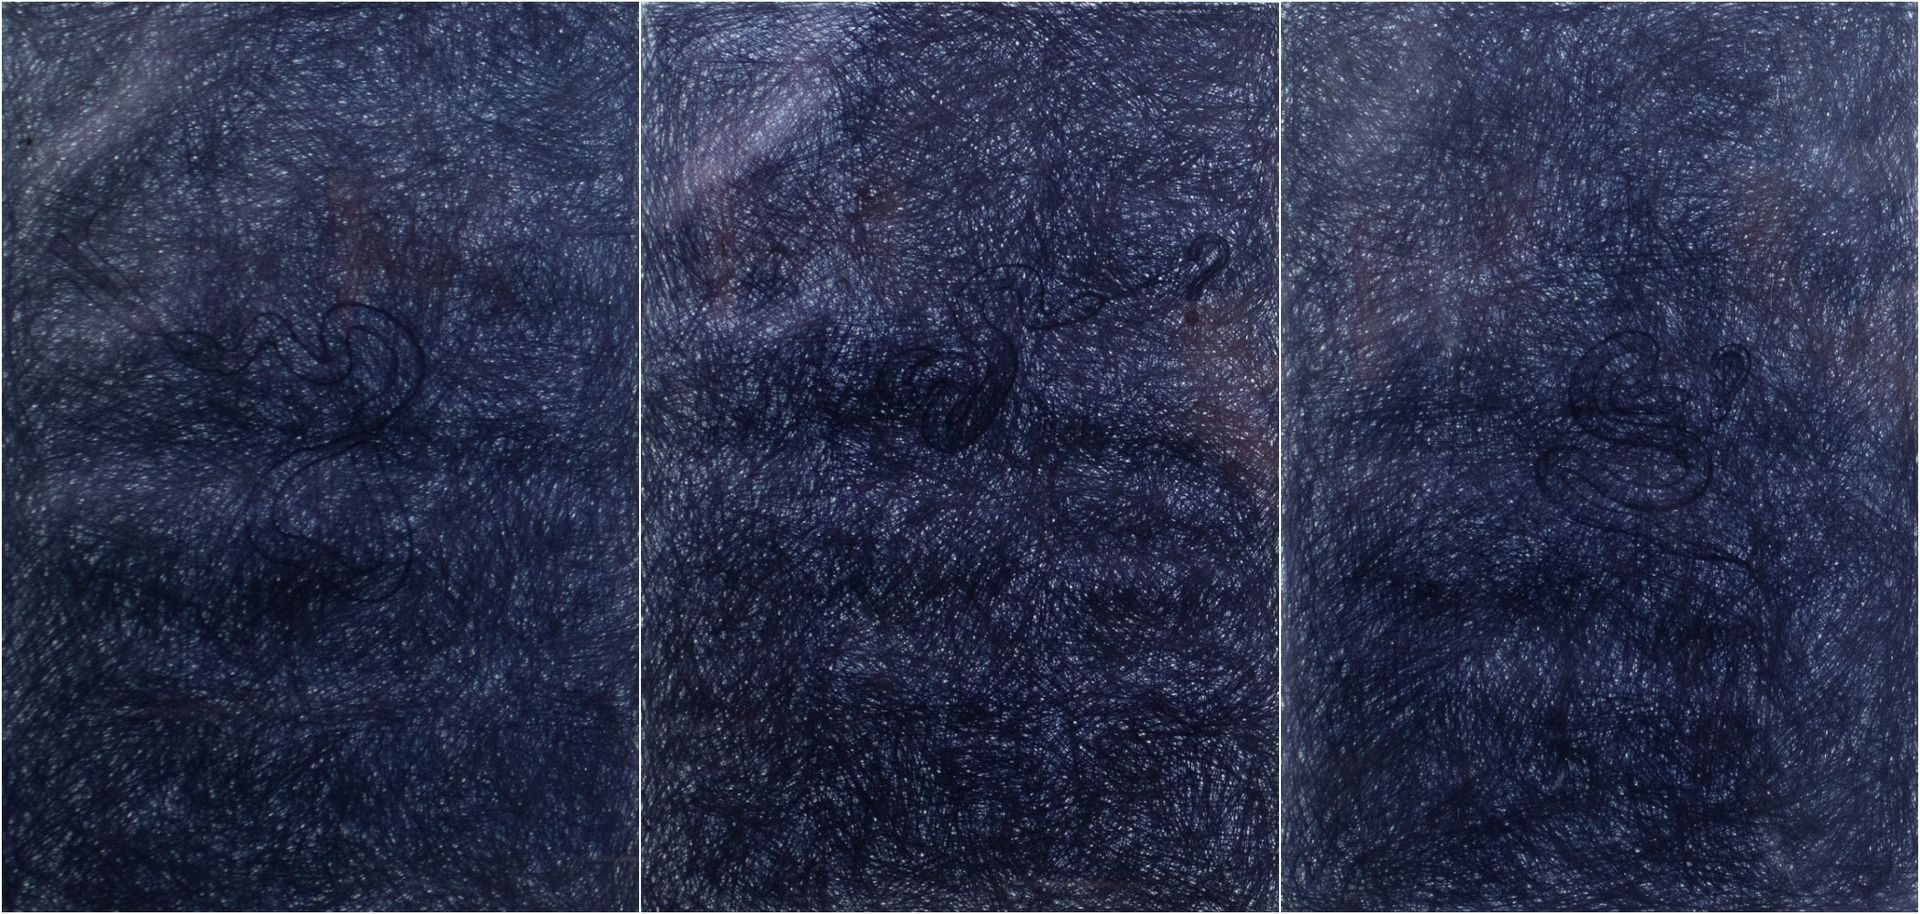 JAN FABRE (1958) 题目是 "Vragen aan slang - Uur blauw".3张圆珠笔画，日期是1987年。Vragen aan s&hellip;